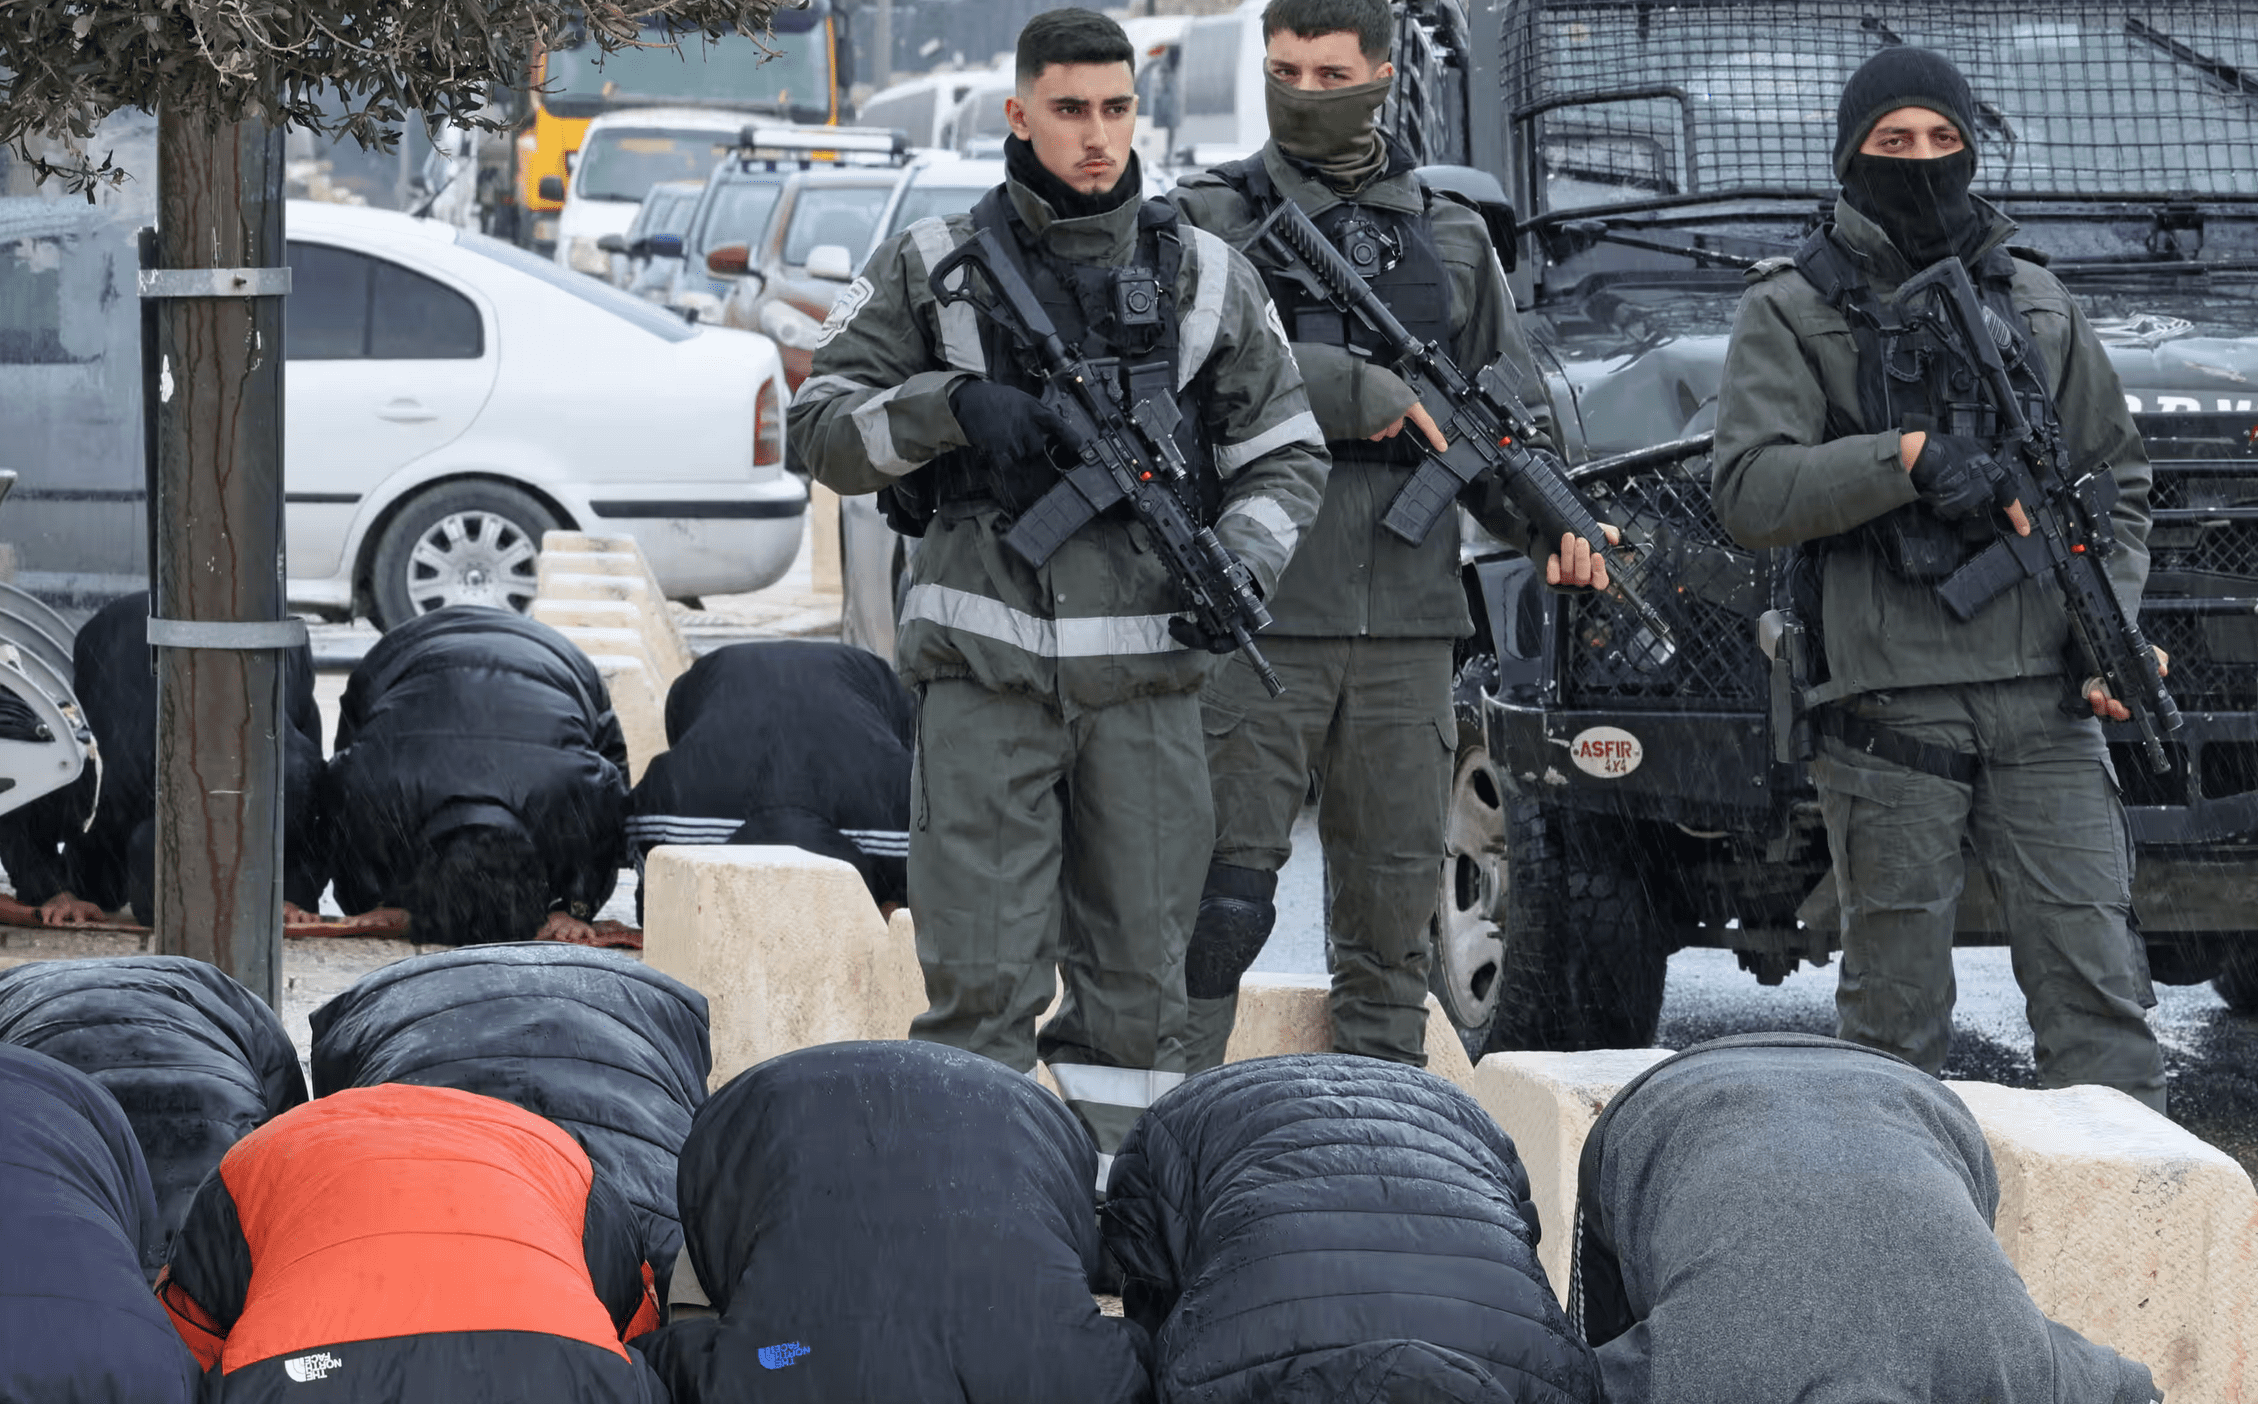 Al-Aqsa: nonostante i moniti della Giordania Israele impone altre restrizioni per l'accesso alla moschea